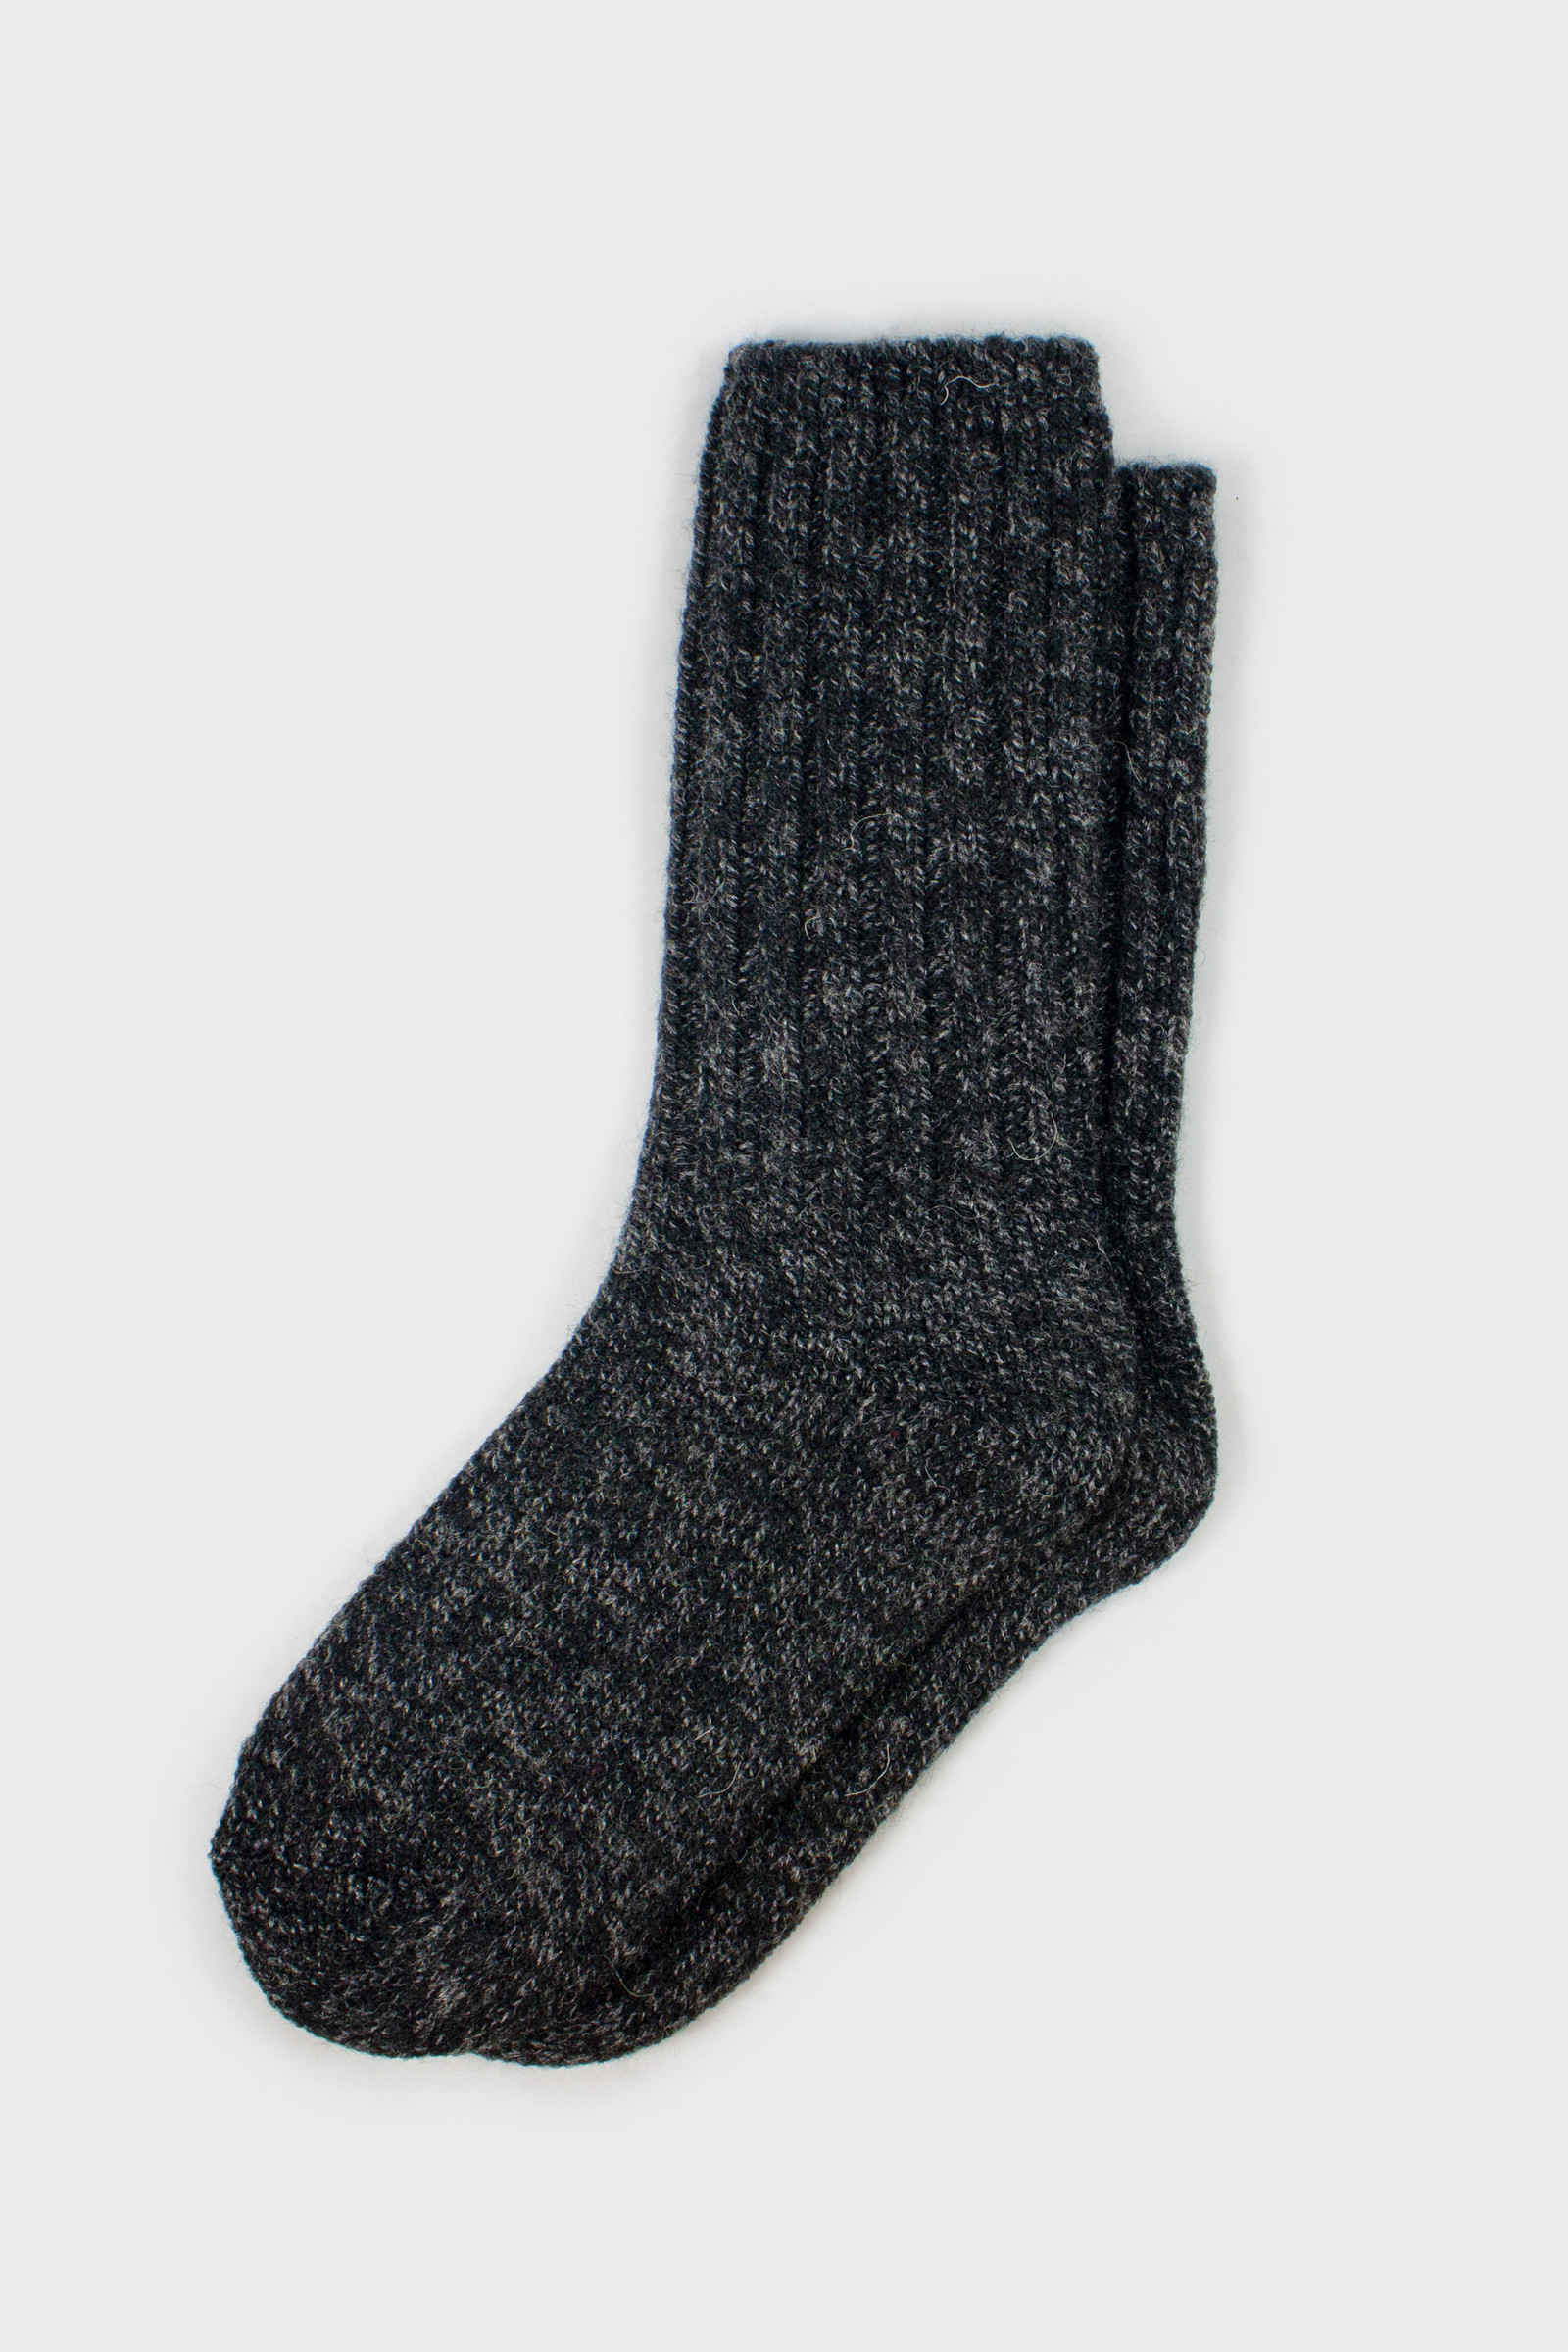 Woolrich Calcetines de lana merino para hombre, fabricados en Estados  Unidos, calcetines de senderismo hechos de 78% lana de cordero merino con  arco